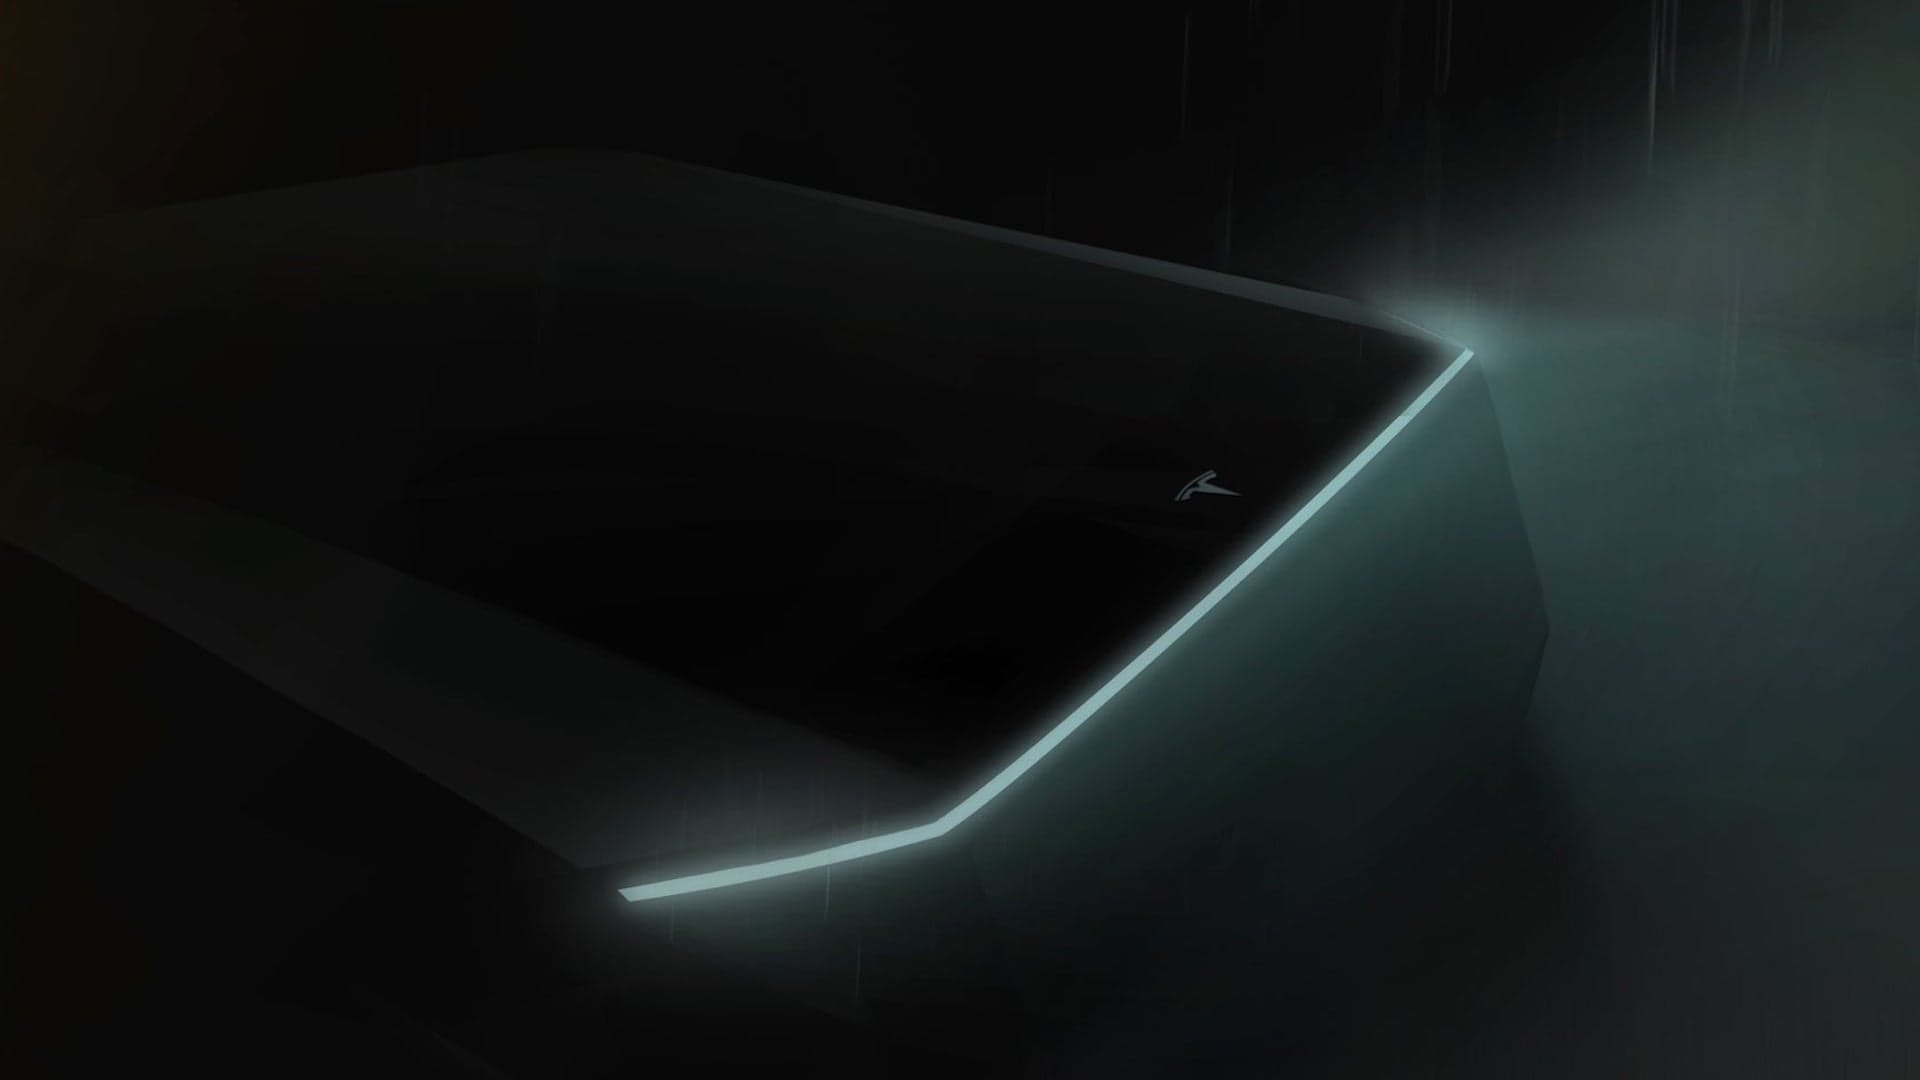 Elon Musk Shares First-Ever Teaser of Upcoming ‘Cyberpunk’ Tesla Pickup Truck